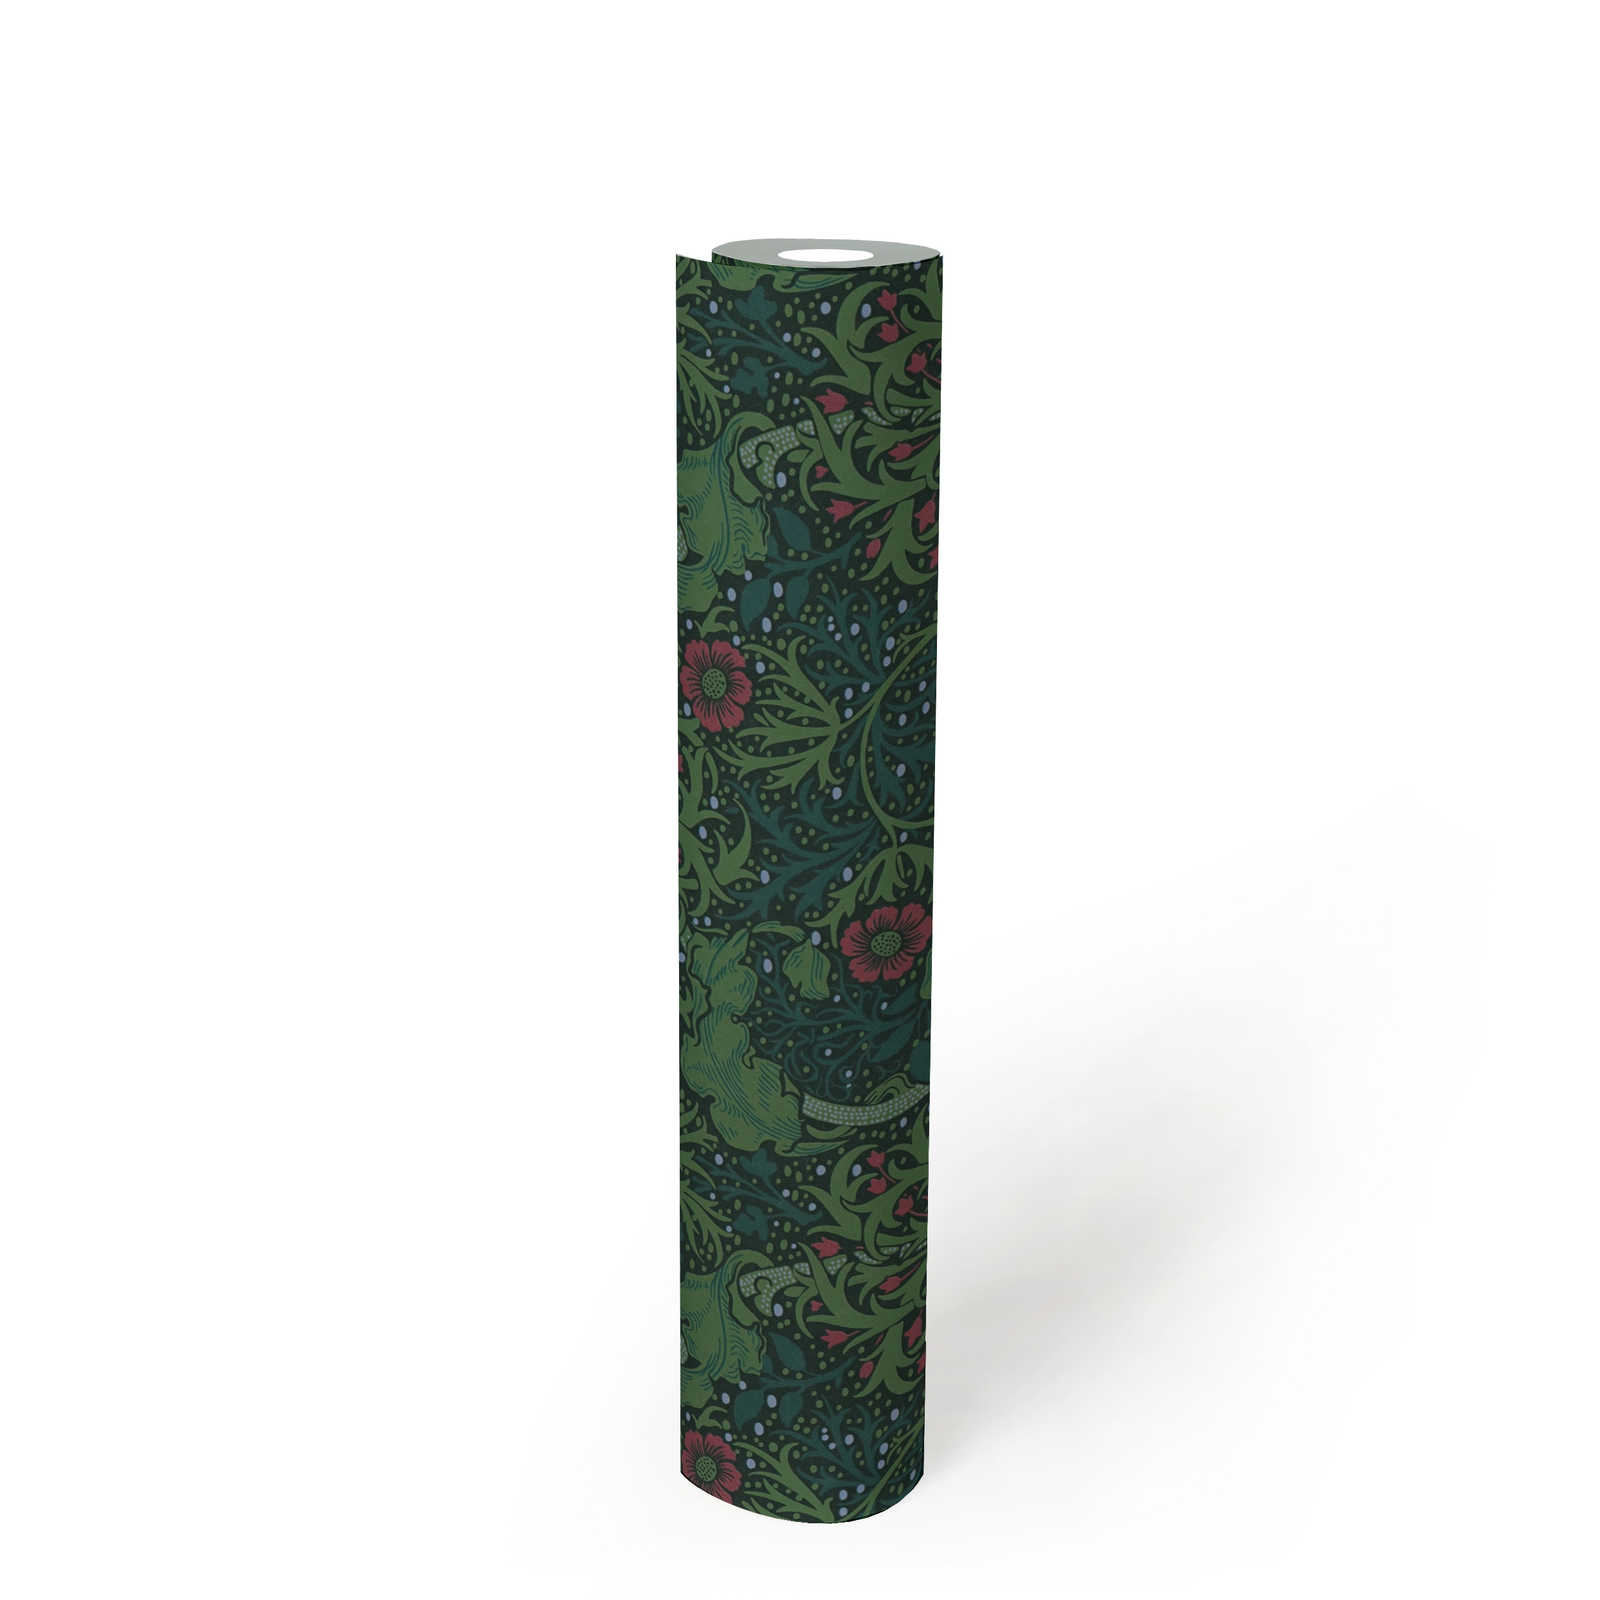             Florale Tapete mit Blüten und Blumenranken – Grün, Rosa, Schwarz
        